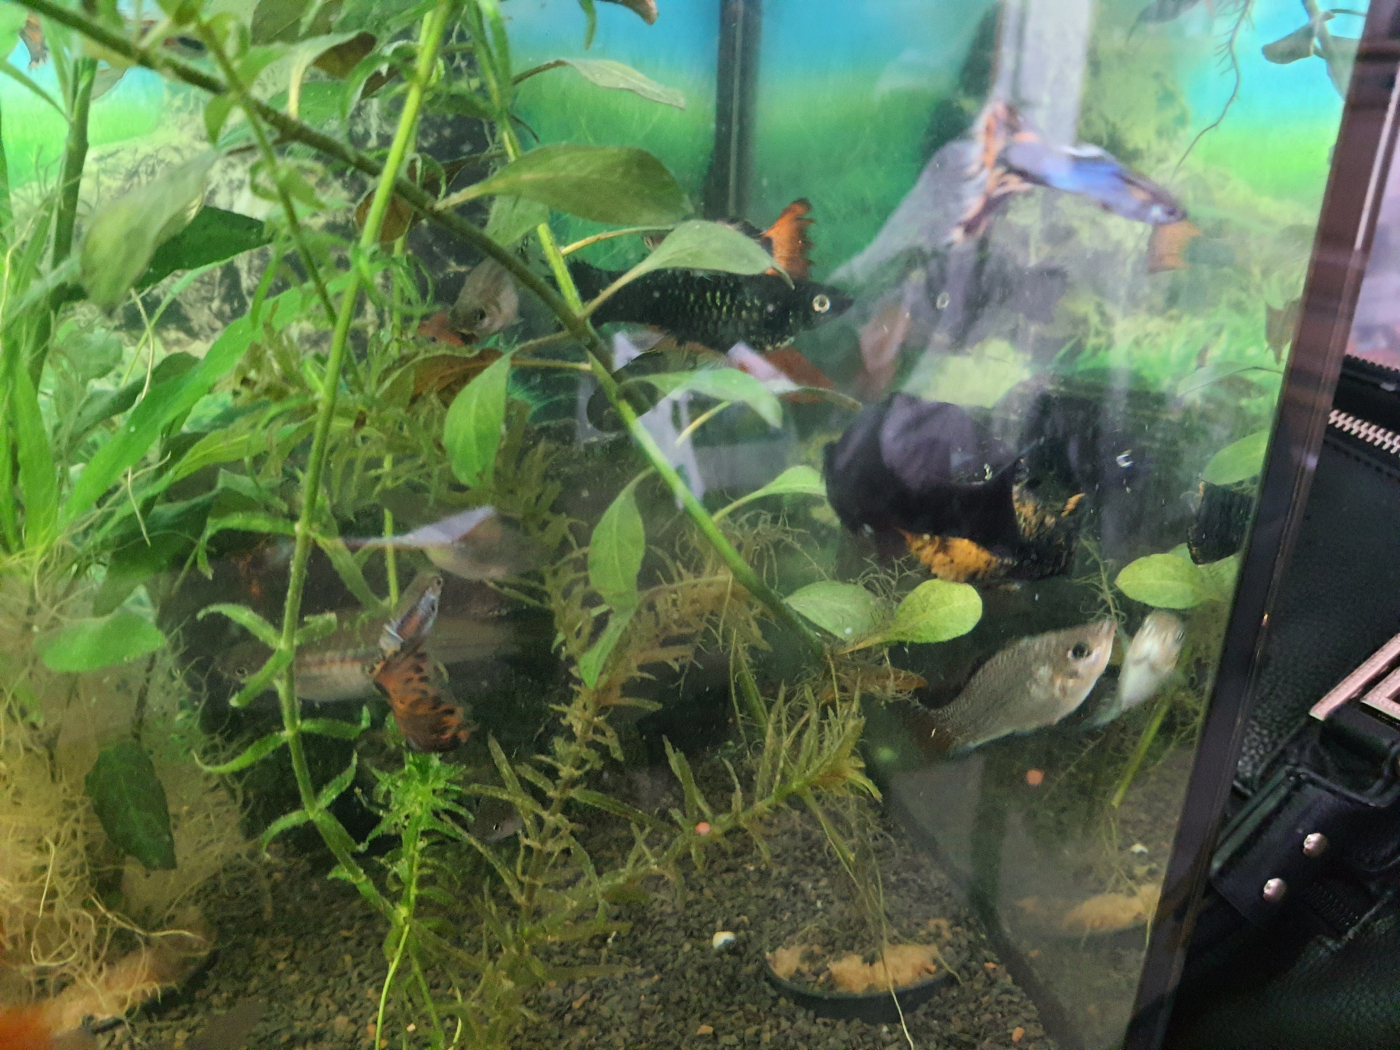 Substrat pour aquarium - Manado - JBL - 10 L AgroBiothers